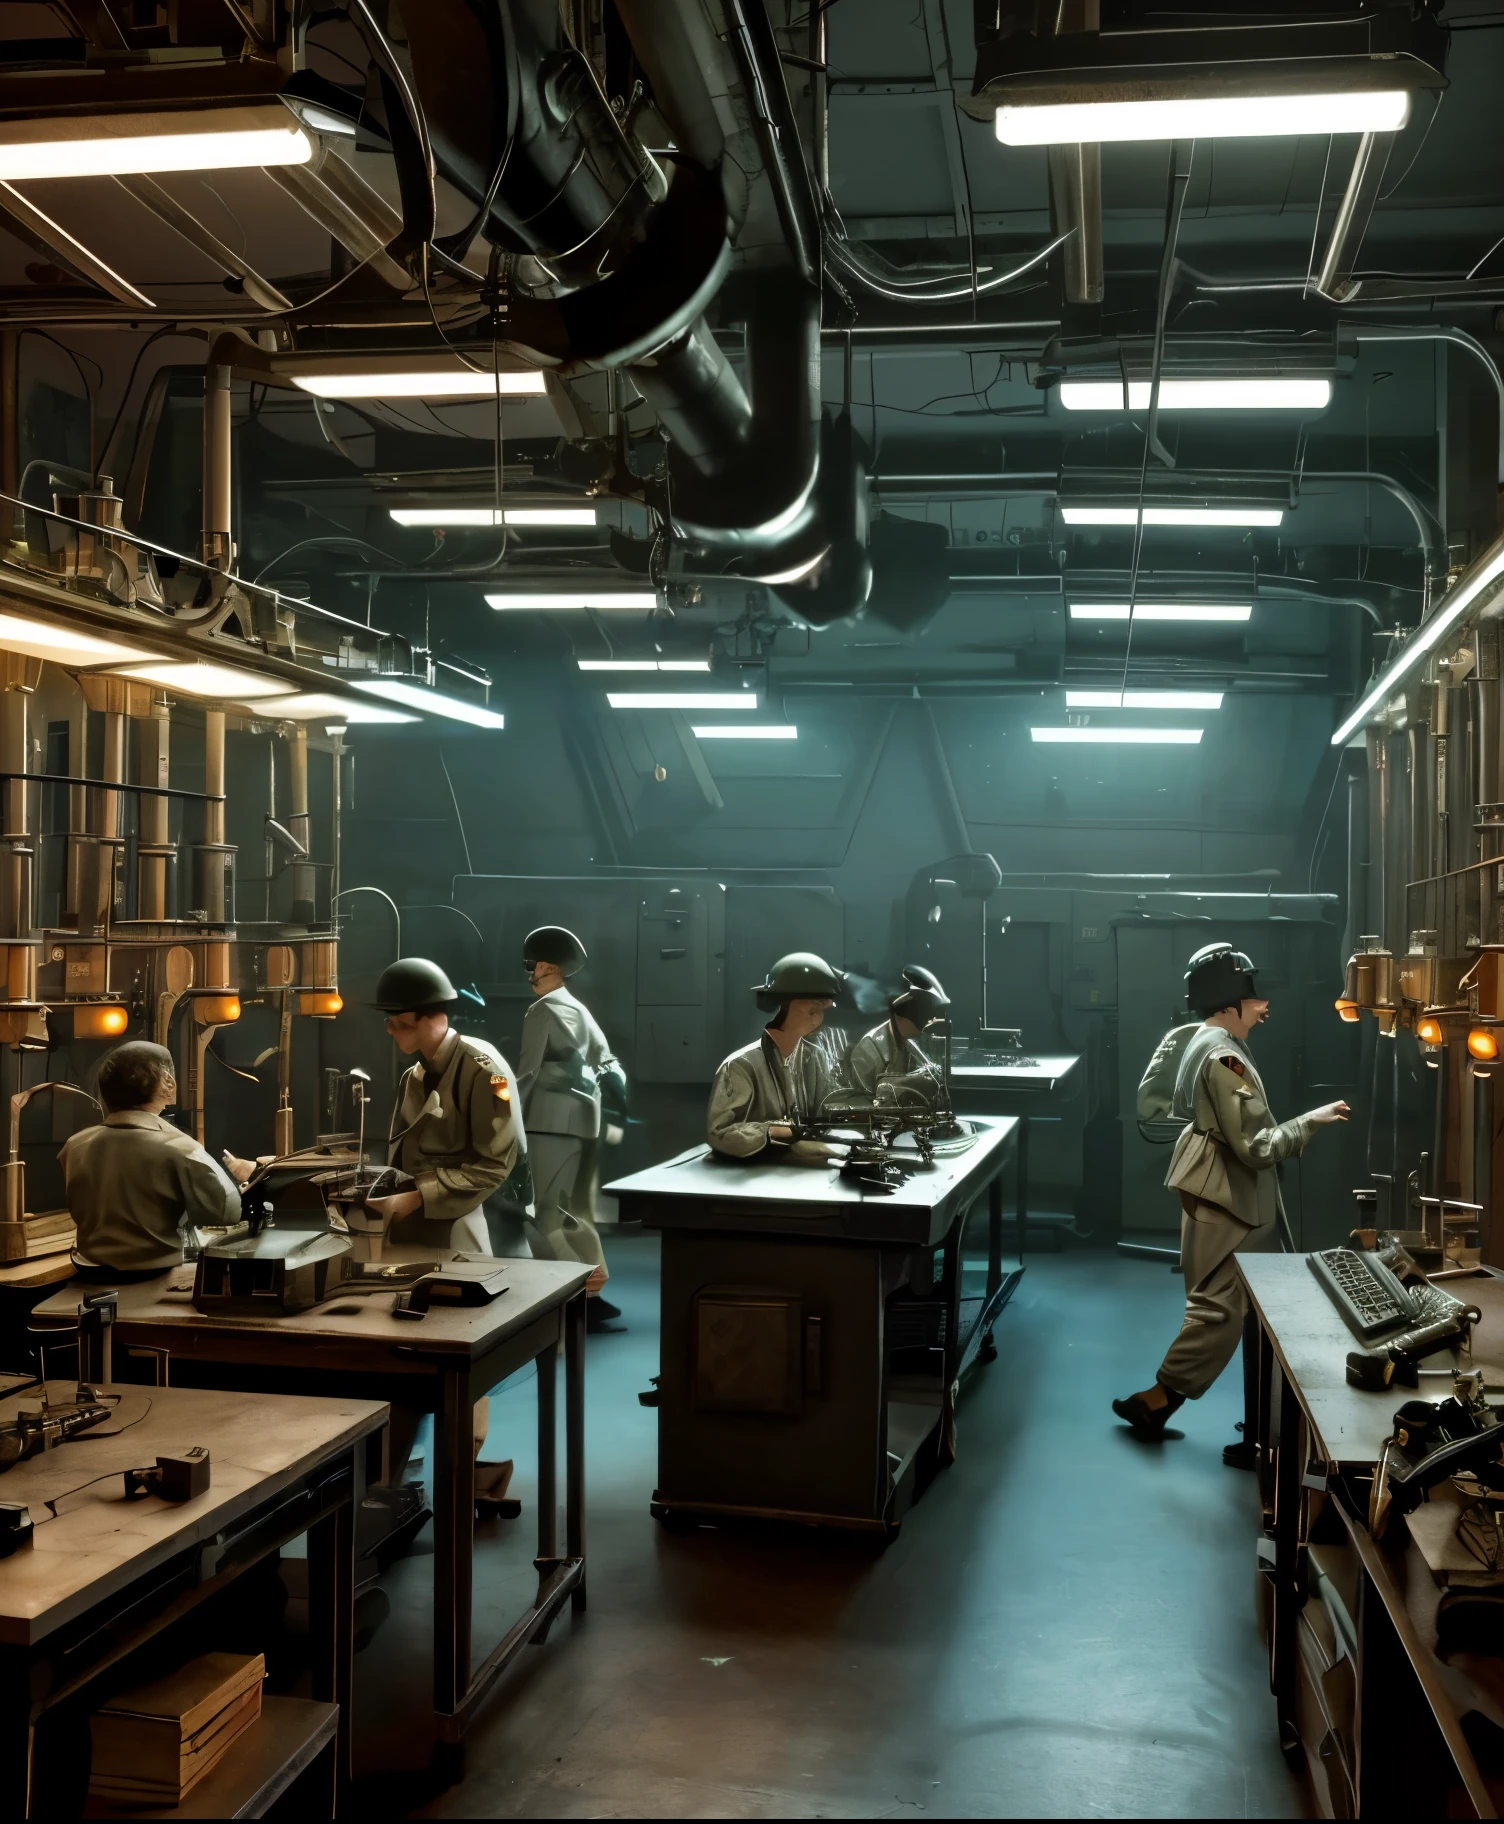  مشهد خيال علمي من الحرب العالمية الثانية مع أدمغة مصطفة على طاولة المختبر, محاطة بالمعدات العلمية القديمة والأضواء الخافتة